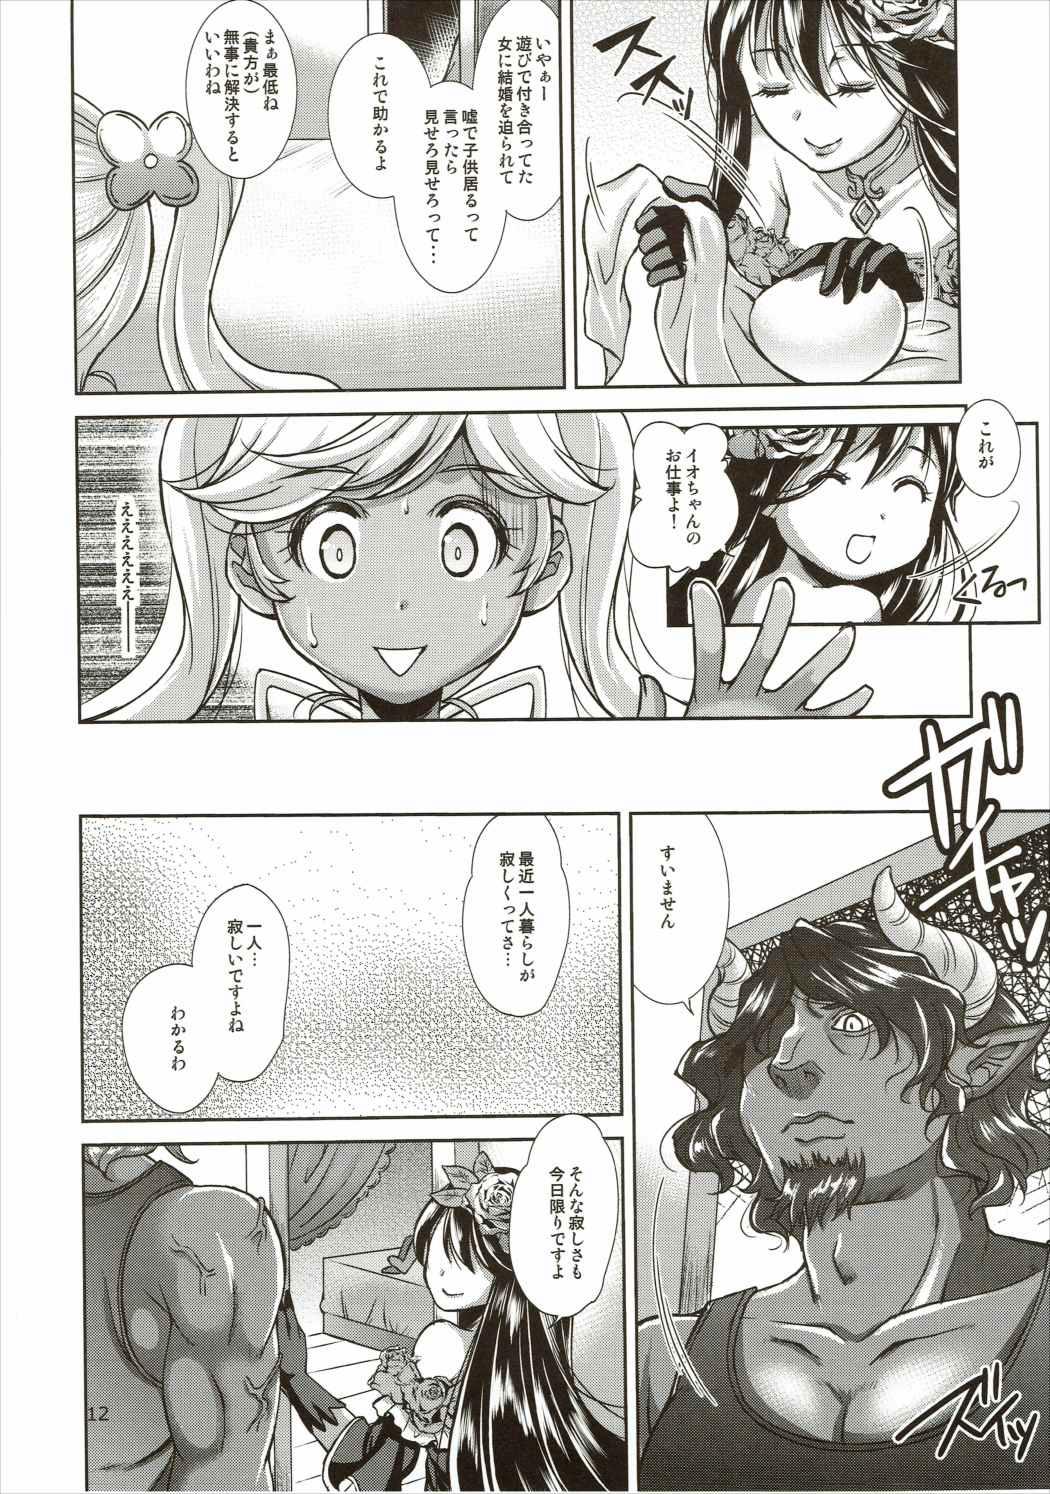 Mms Aoi kokoro no Harakashi Io - Granblue fantasy Stepbro - Page 11